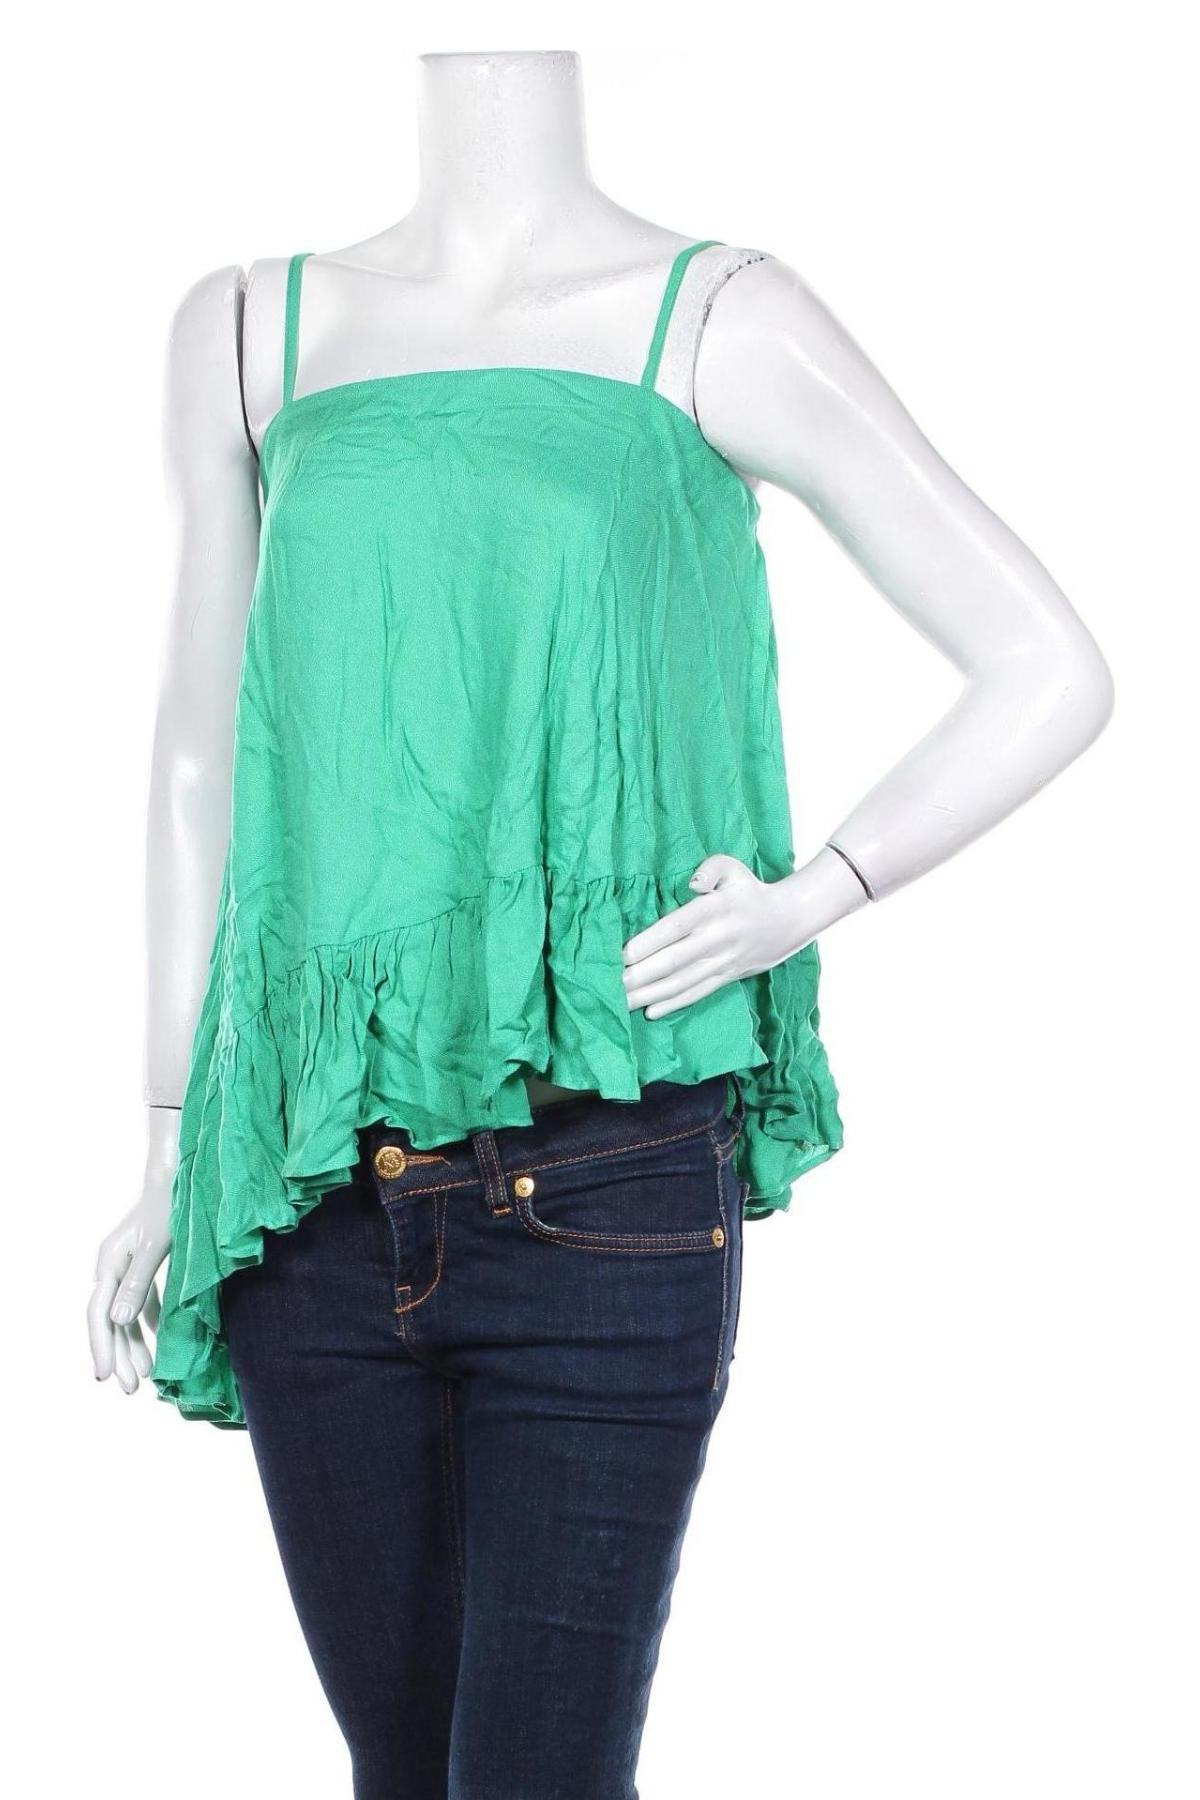 Γυναικείο αμάνικο μπλουζάκι BelAir, Μέγεθος S, Χρώμα Πράσινο, Βισκόζη, Τιμή 28,10 €